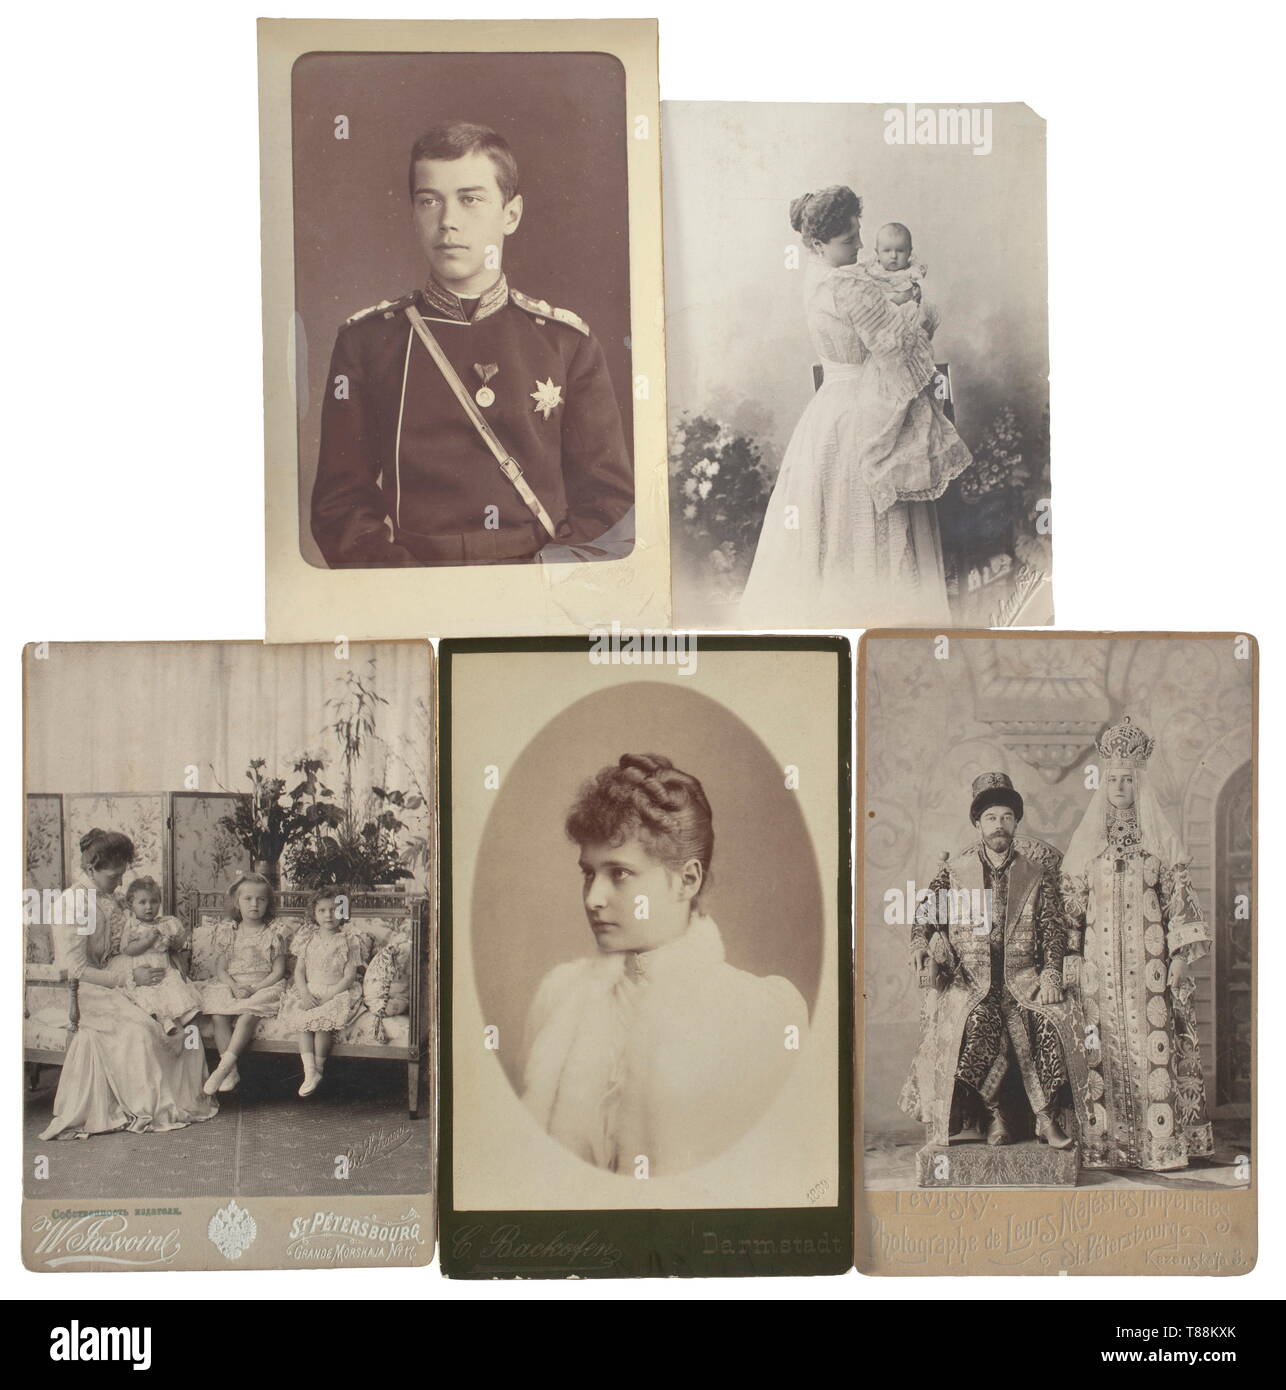 Cinque russo foto regalo di Tsar Nicholas II e Tsarina Alexandra con bambini circa 1885 - 1900. Foto del futuro Tsar. Firma in rilievo della corte fotografo 'Levitsky' in corrispondenza del bordo destro (rivestimento parzialmente pelato via), la foto della coppia imperiale presso l incoronazione con il nome del fotografo 'Levitsky, St. Petersbourg', stampigliato sul retro. Foto di Tsarina Alexandra e i bambini con il nome del fotografo "W. Jasvoine, St. Petersbourg', foto della zarina con il nome del fotografo "C. Backofen Darmstadt'. Dimensioni circa 17 x 10,5 cm. , Additional-Rights-Clearance-Info-Not-Available Foto Stock